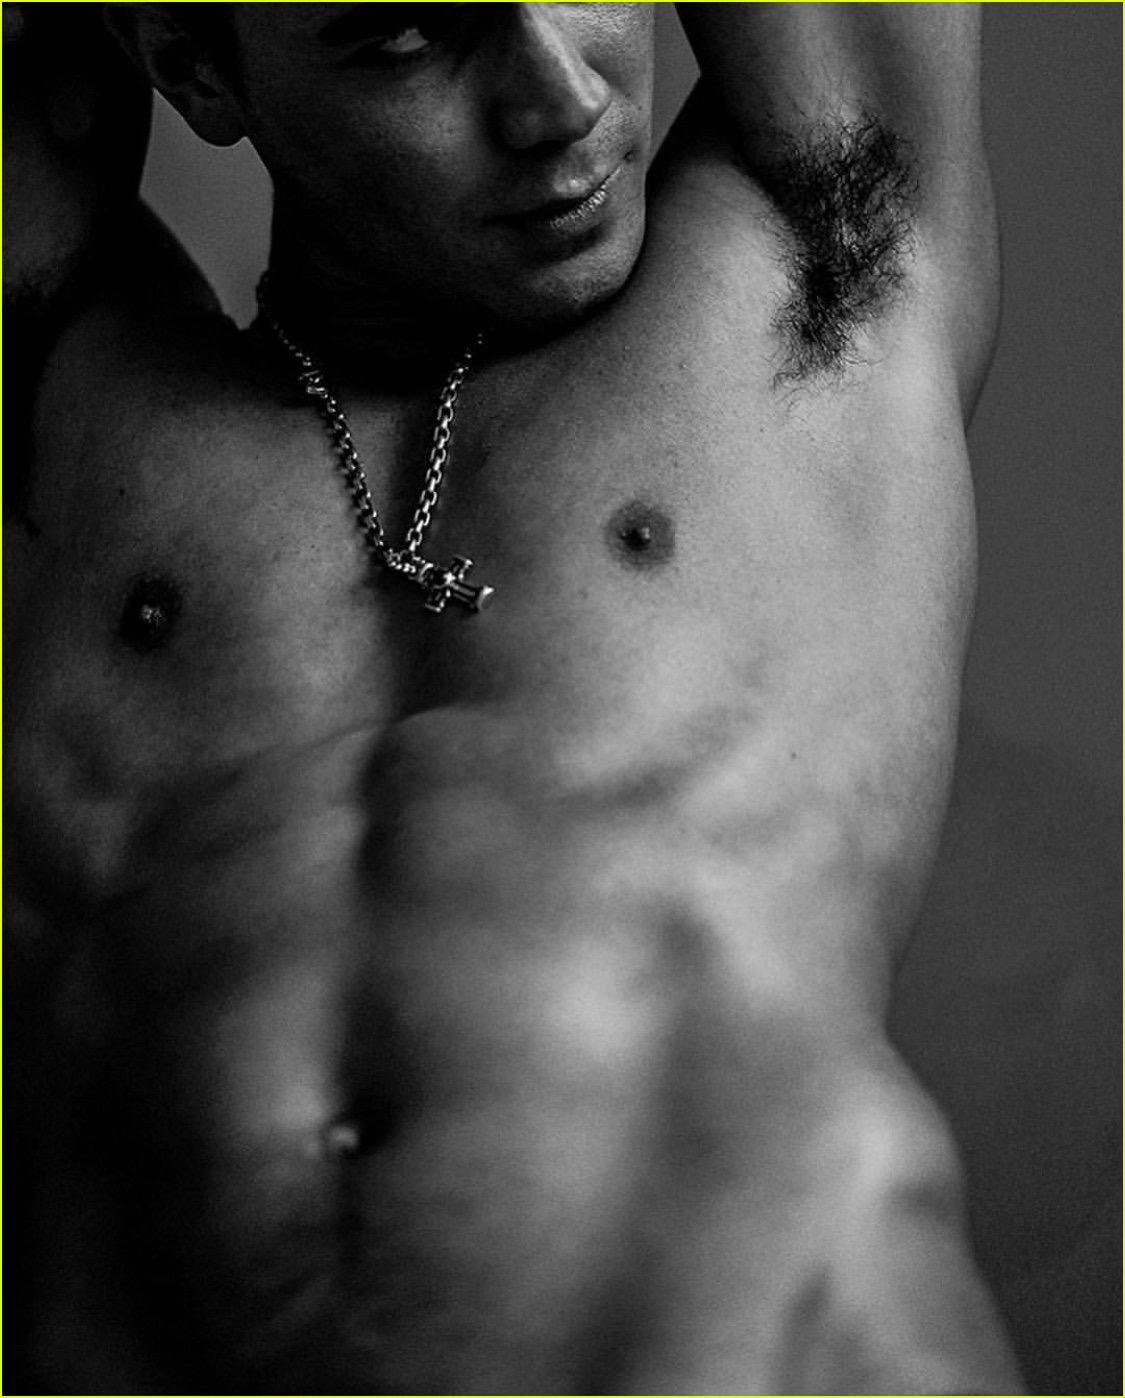 kj apa bares chiseled abs in shirtless photo shoot 03